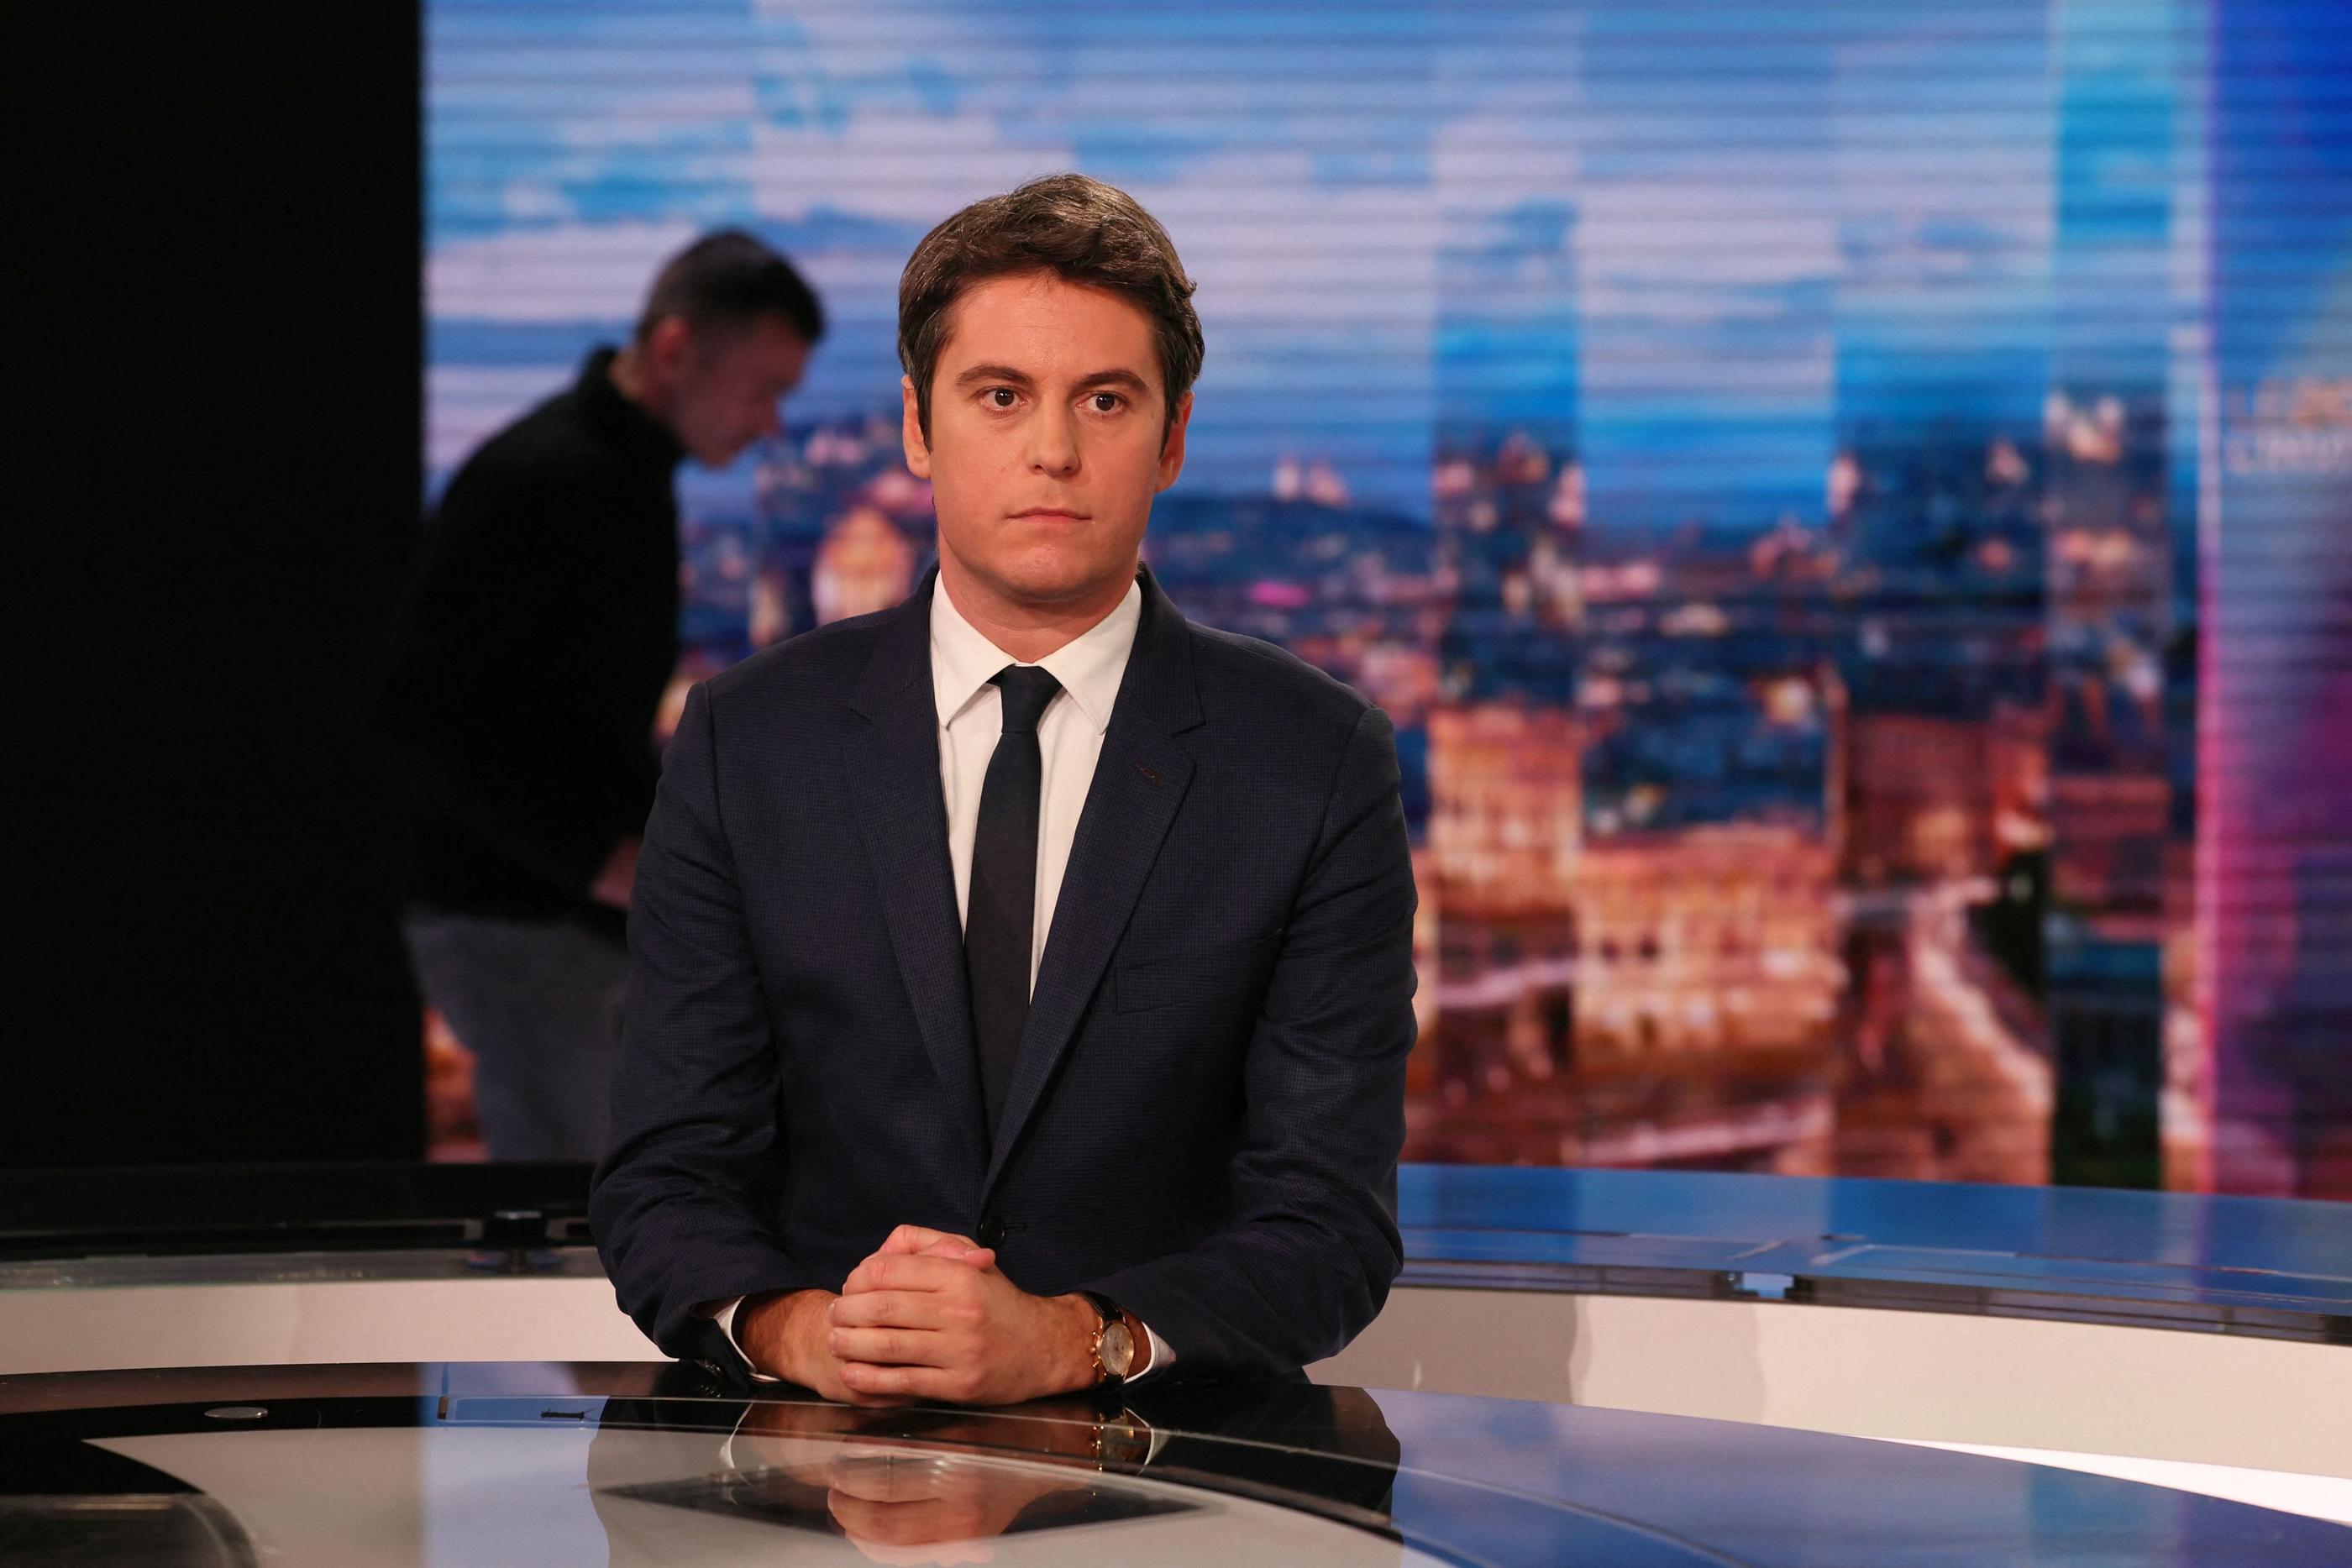 Le Premier ministre Gabriel Attal sur le plateau du JT de TF1, mercredi soir. AFP/Alain Jocard